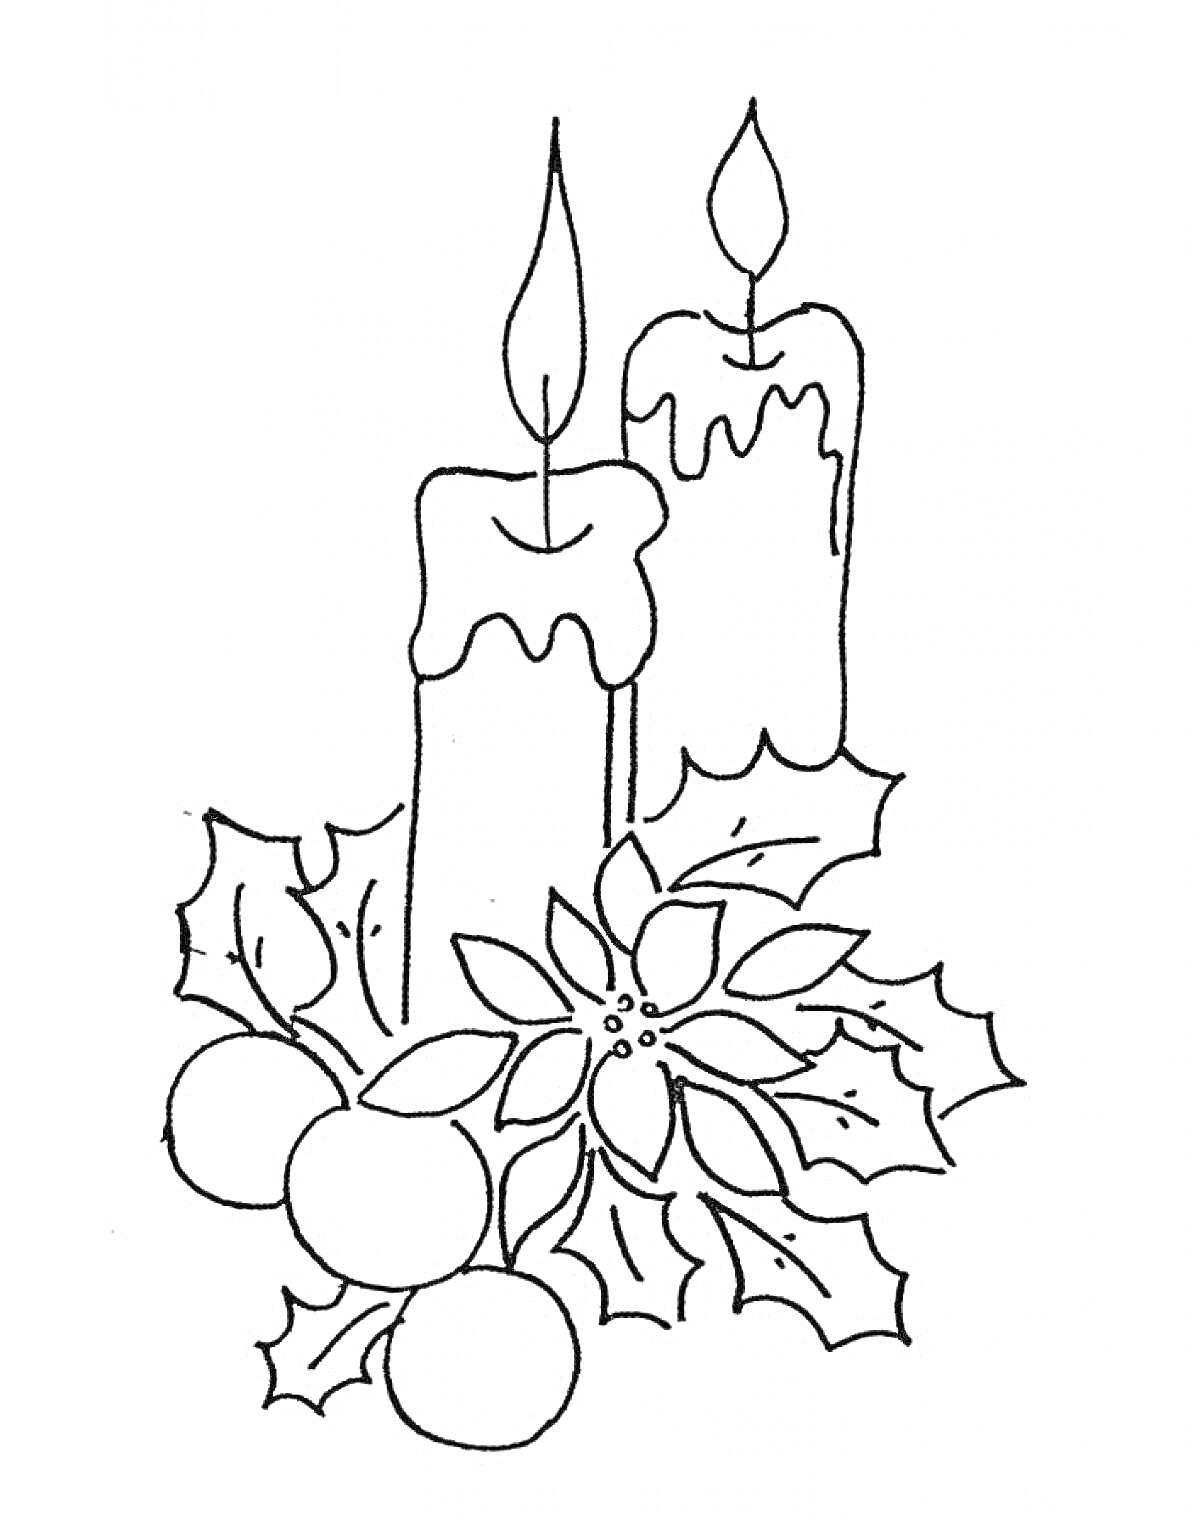 Две свечи с горящими огнями, окруженные рождественскими украшениями, включающими листья и ягоды остролиста, а также цветок пуансеттии.